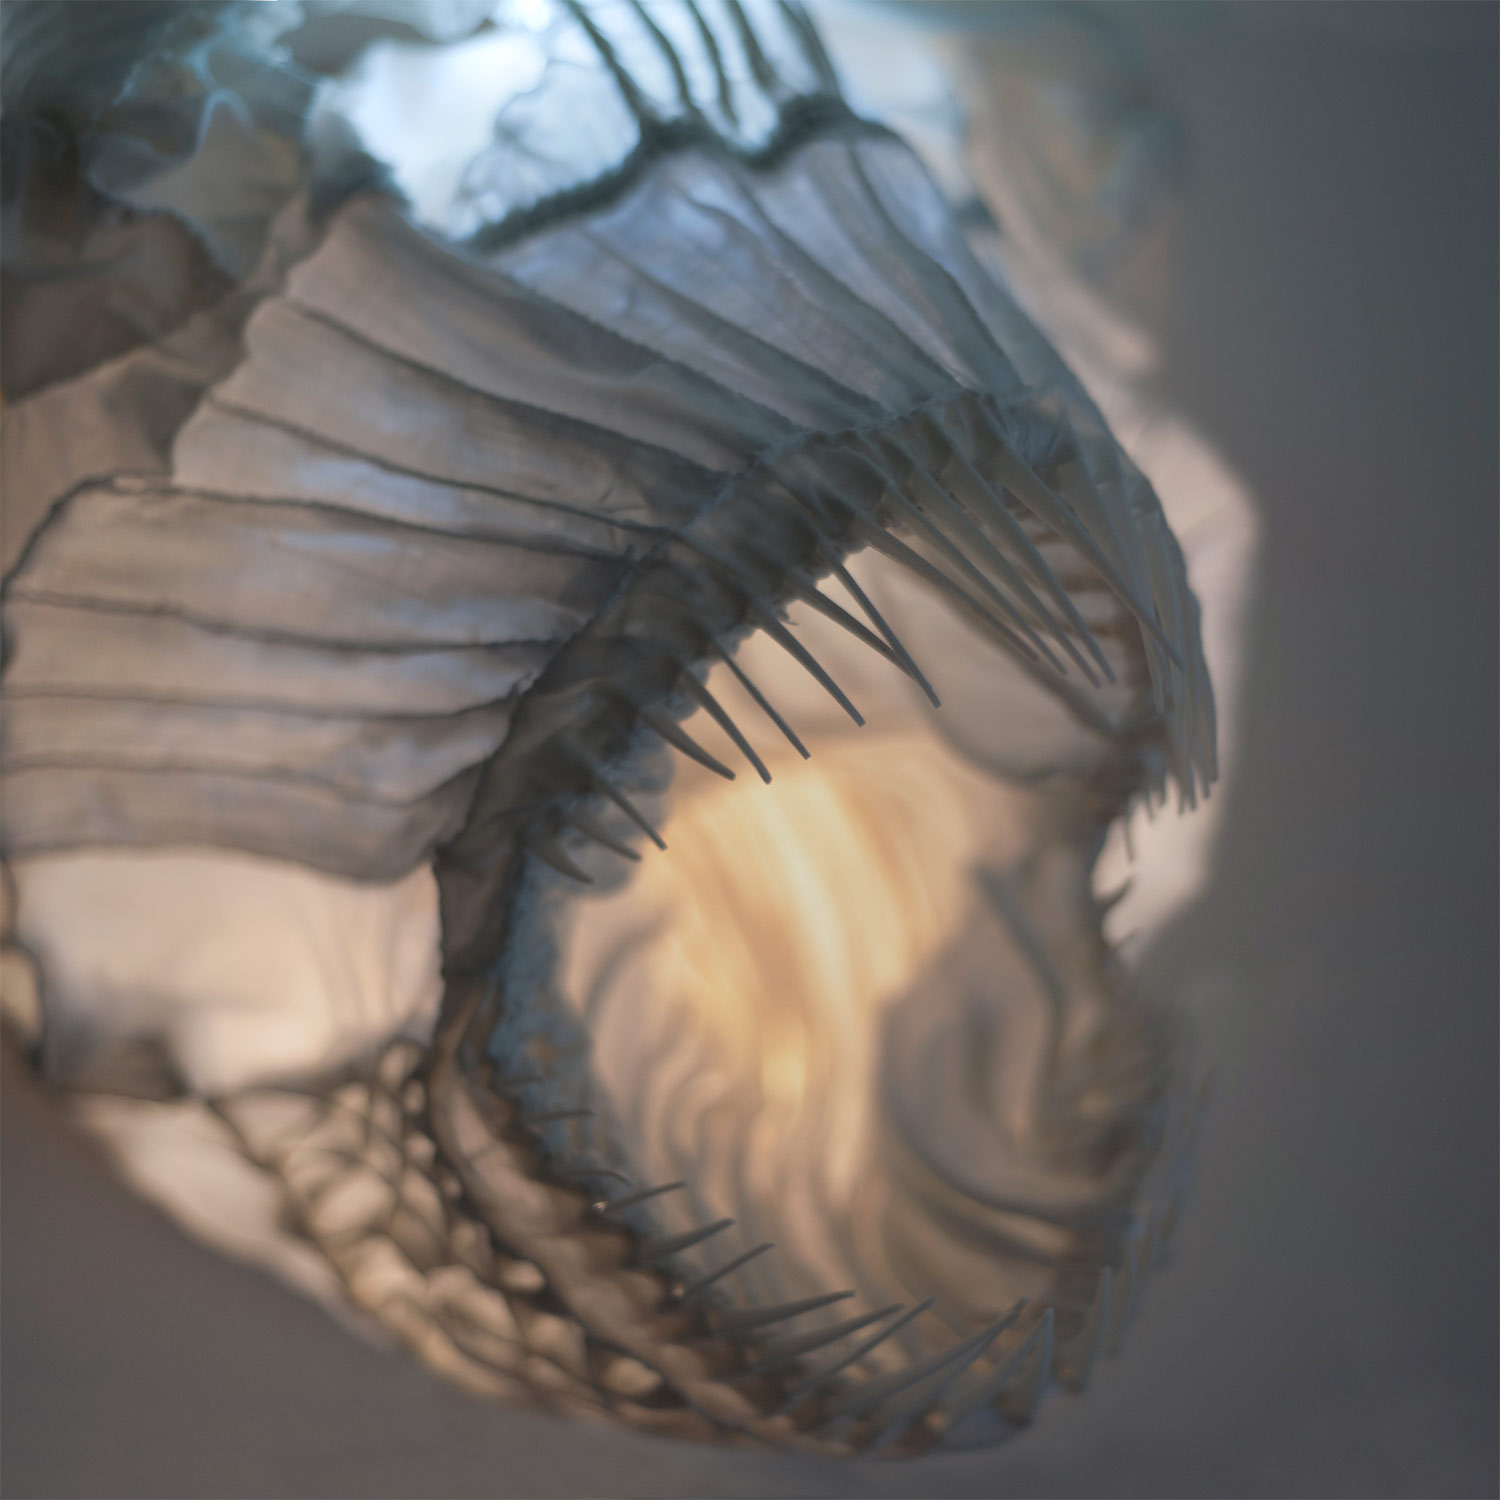 Dračí ryba — designové nástěnné světlo od Spacelights